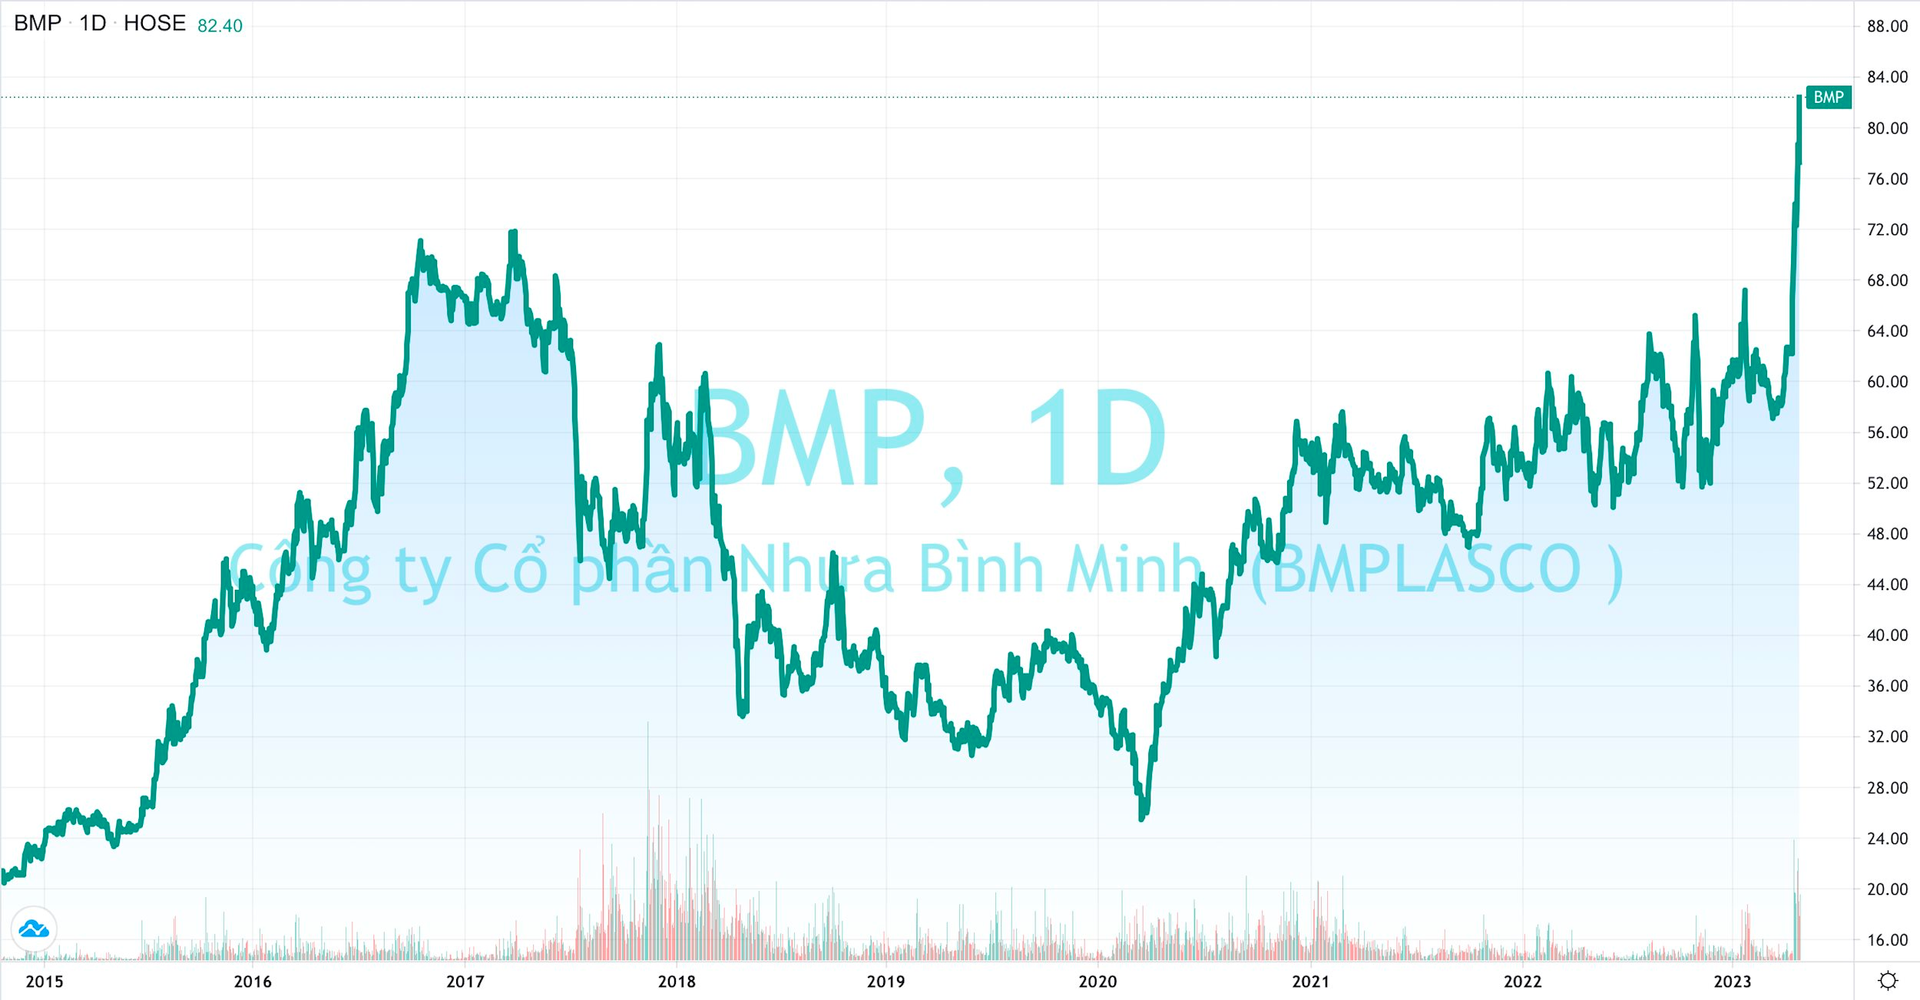 Nhựa Bình Minh sắp chia cổ tức 53%, SCIC đánh tiếng thoái vốn, cổ phiếu BMP tăng “bốc đầu” - Ảnh 1.